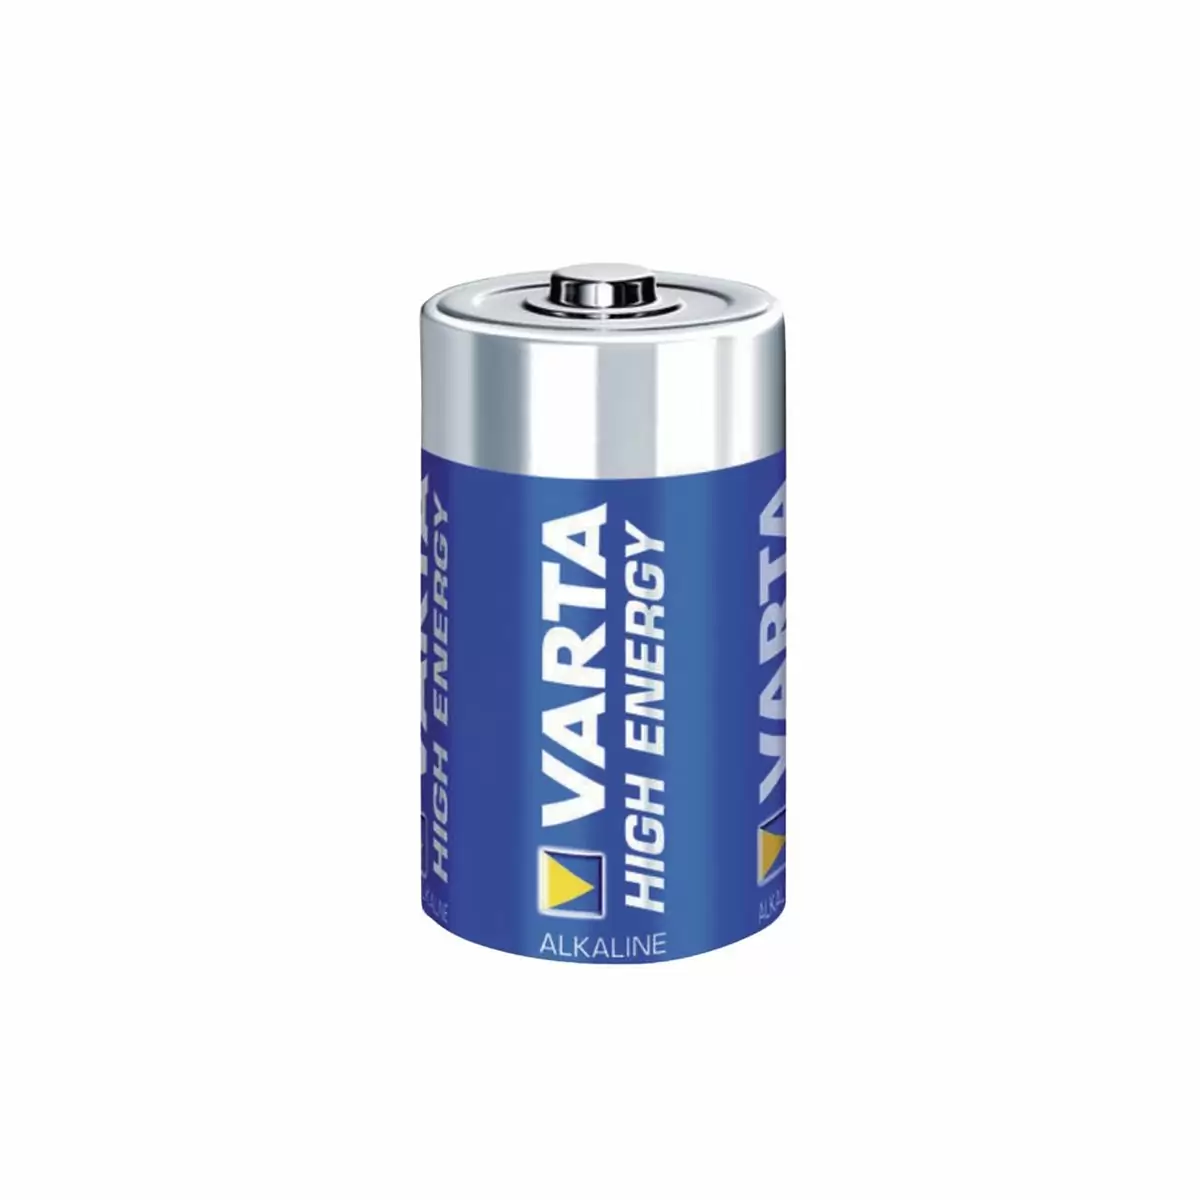 bateria alcalina hugh energy lr14 - image